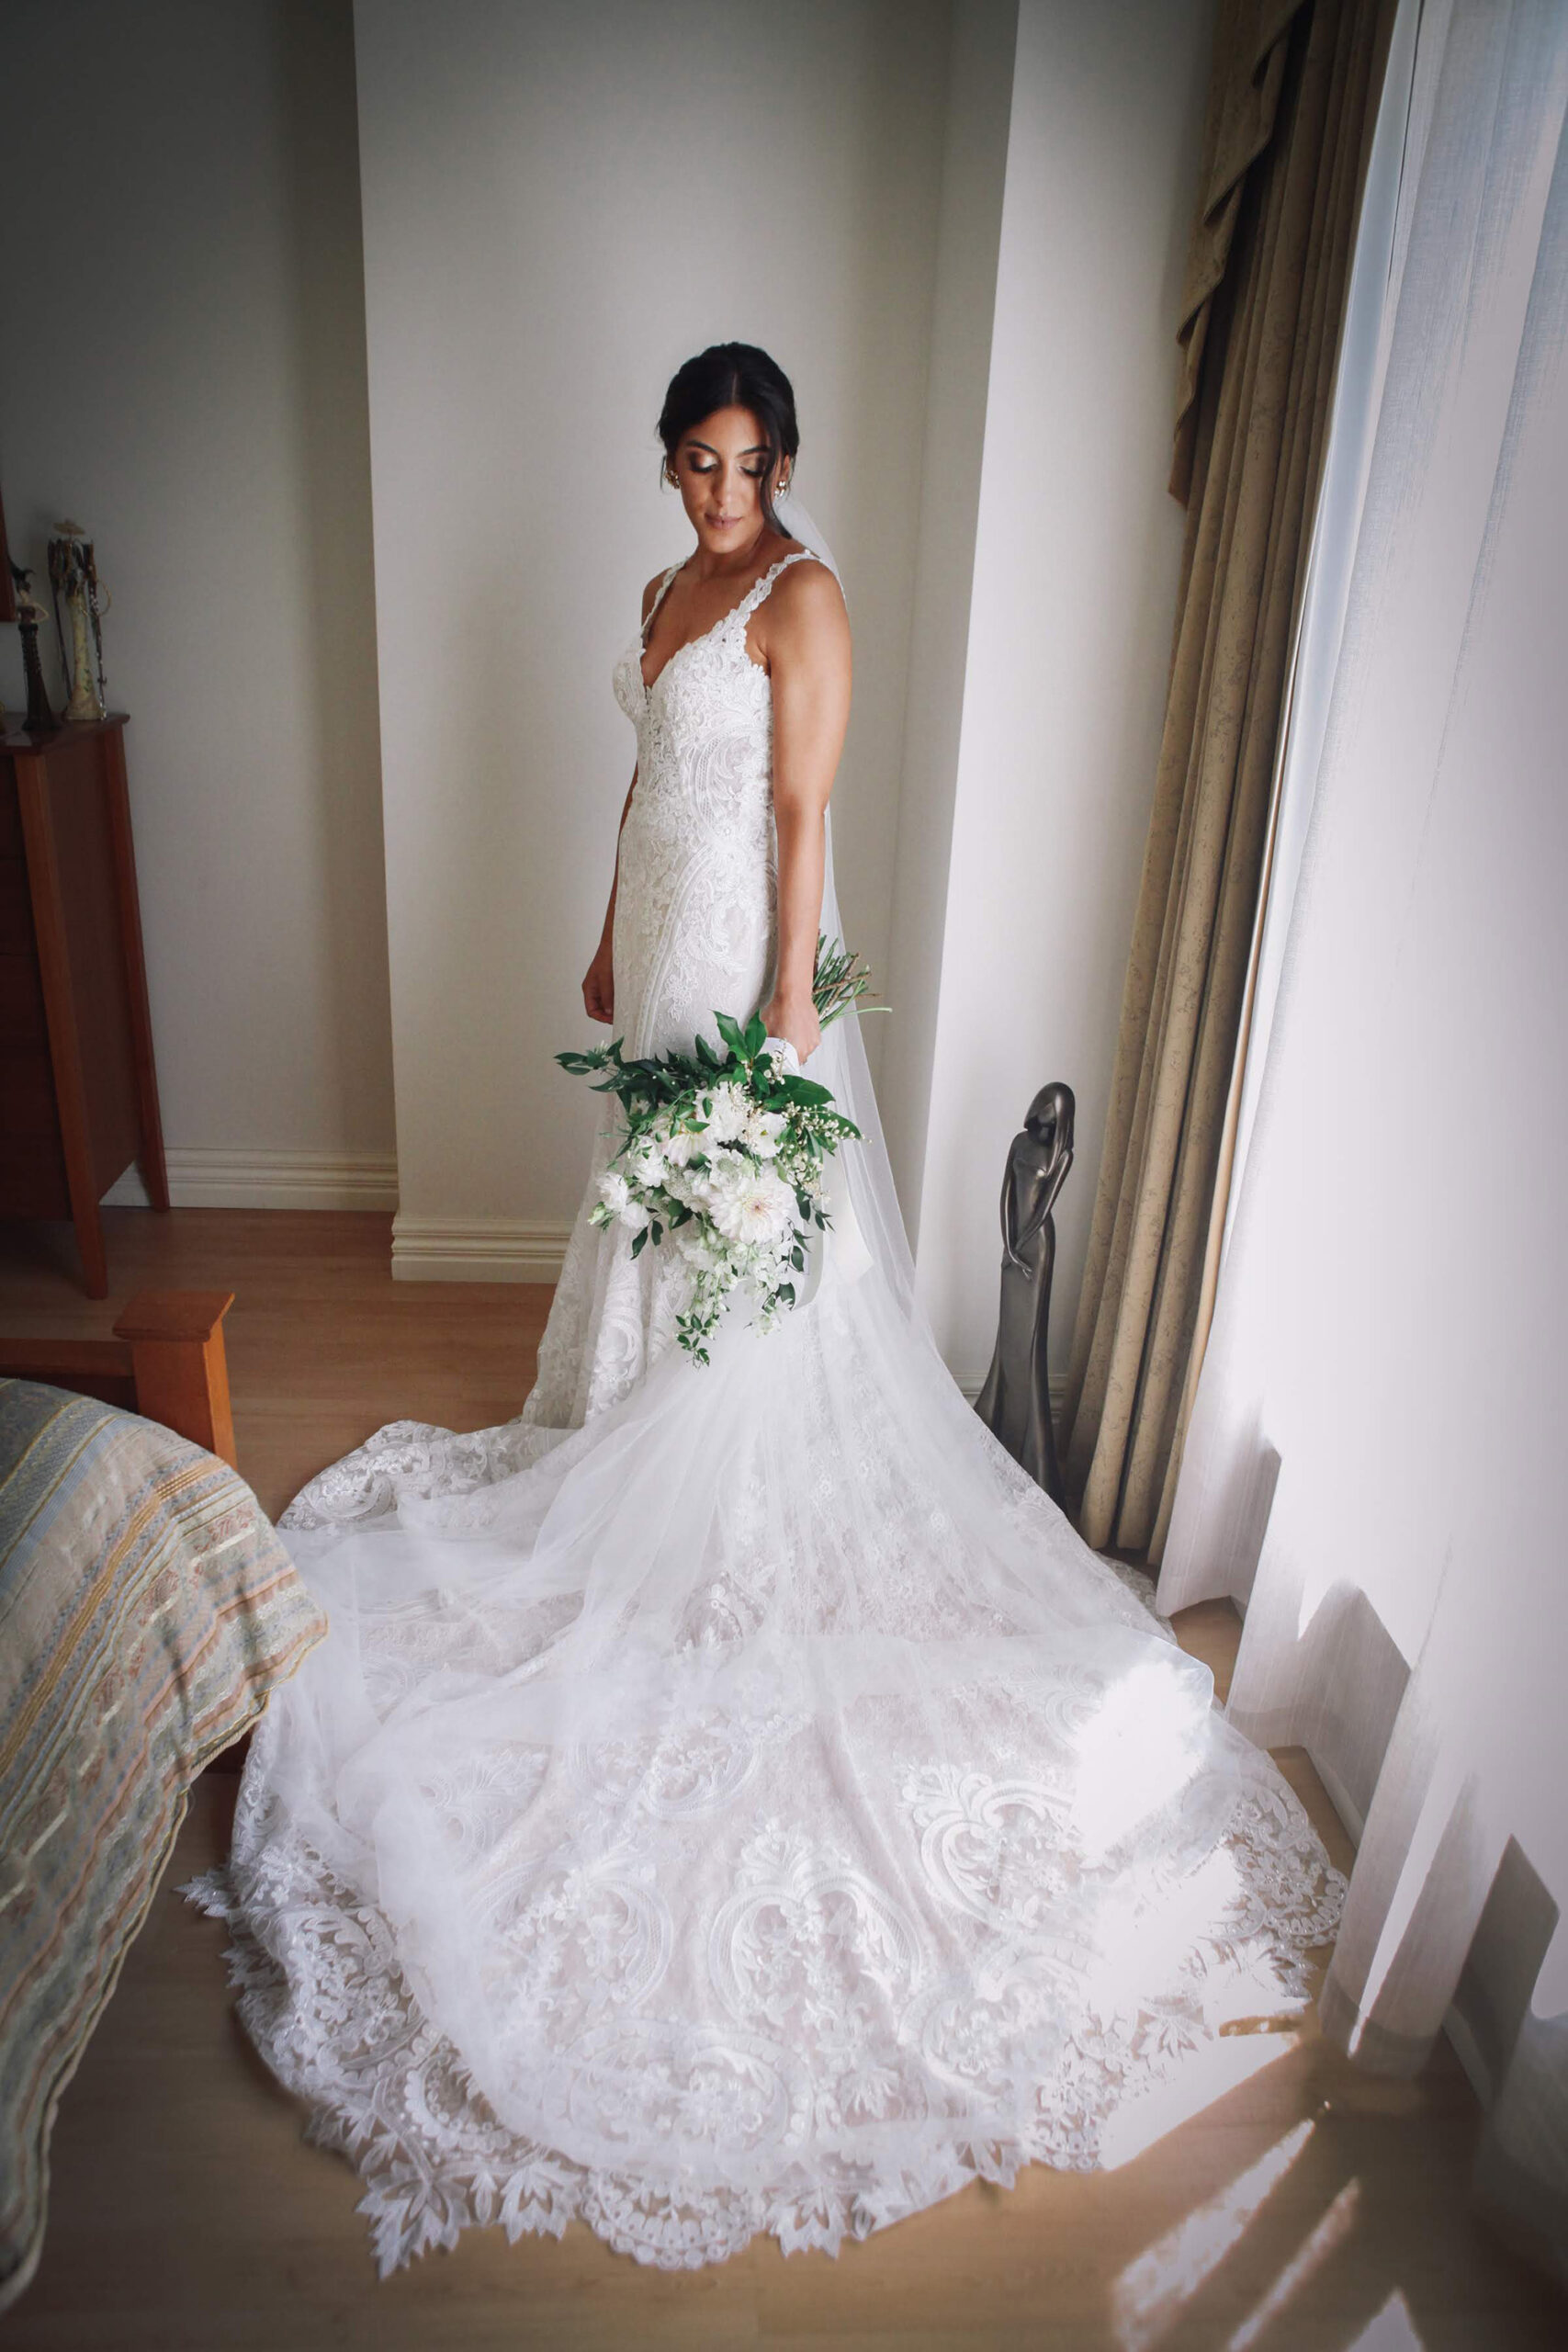 Carla Bruno Elegant White Wedding Panache Photography 009 scaled